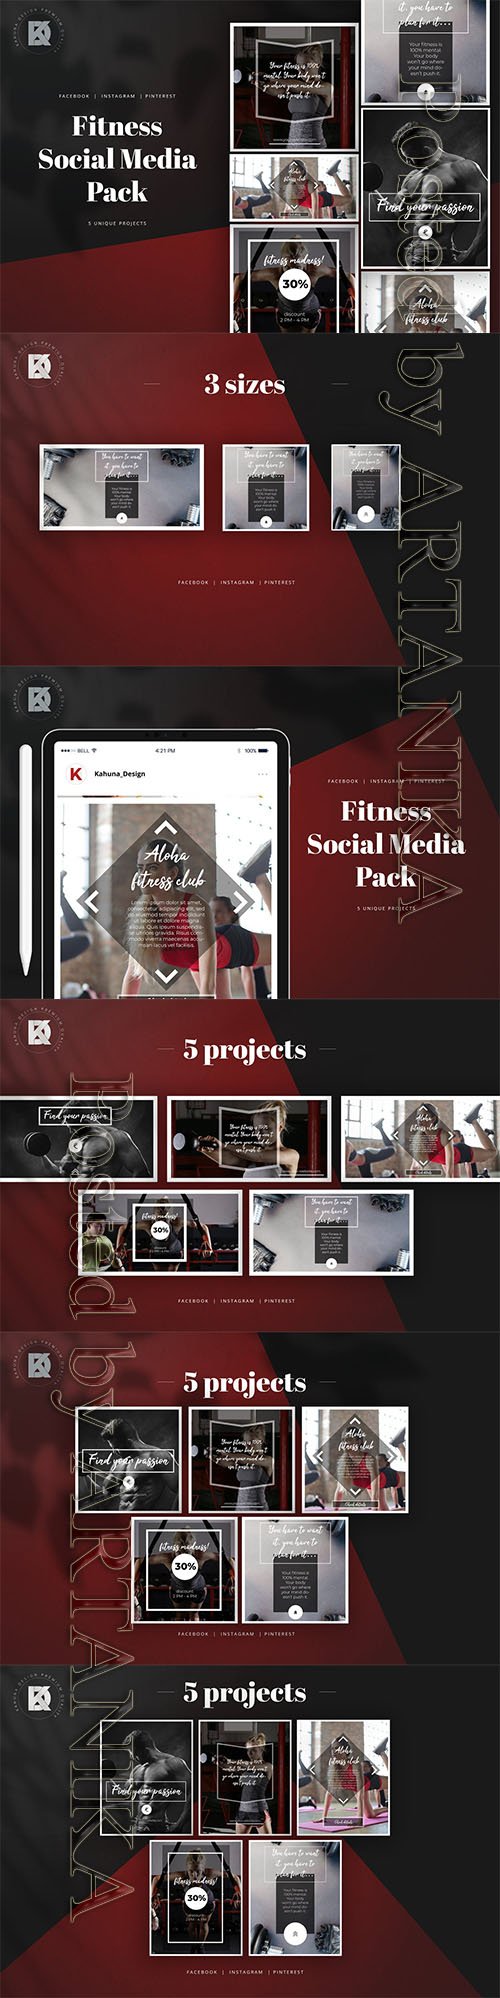 Fitness Social Media Pack